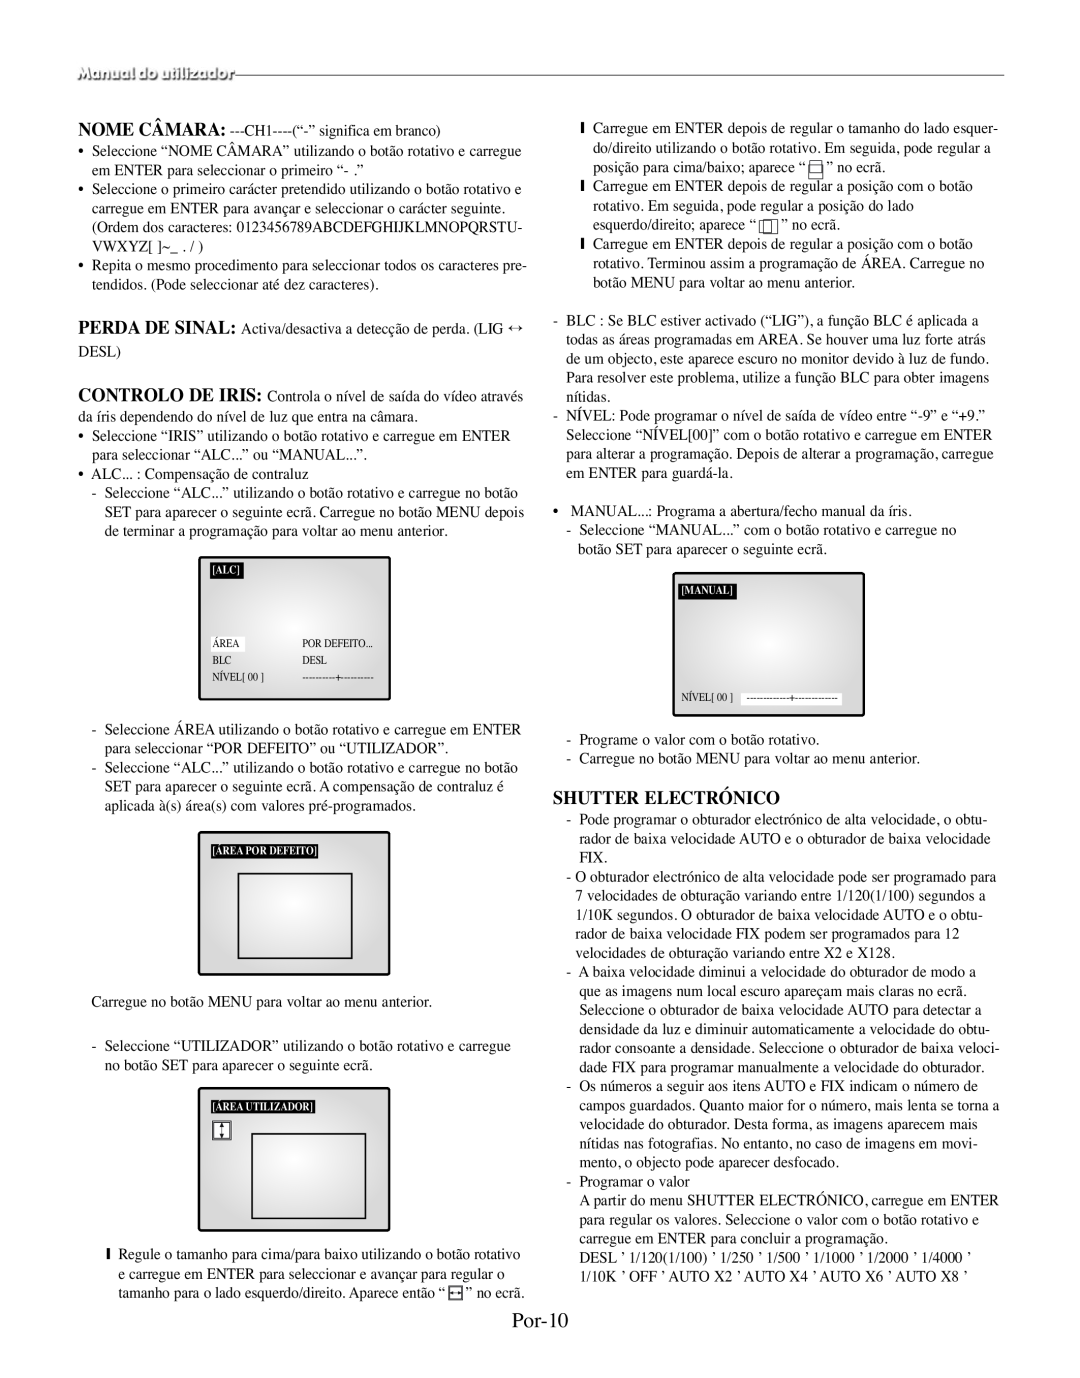 Samsung SMO-210MP/UMG, SMO-210TRP manual Por-10, Shutter Electrónico 